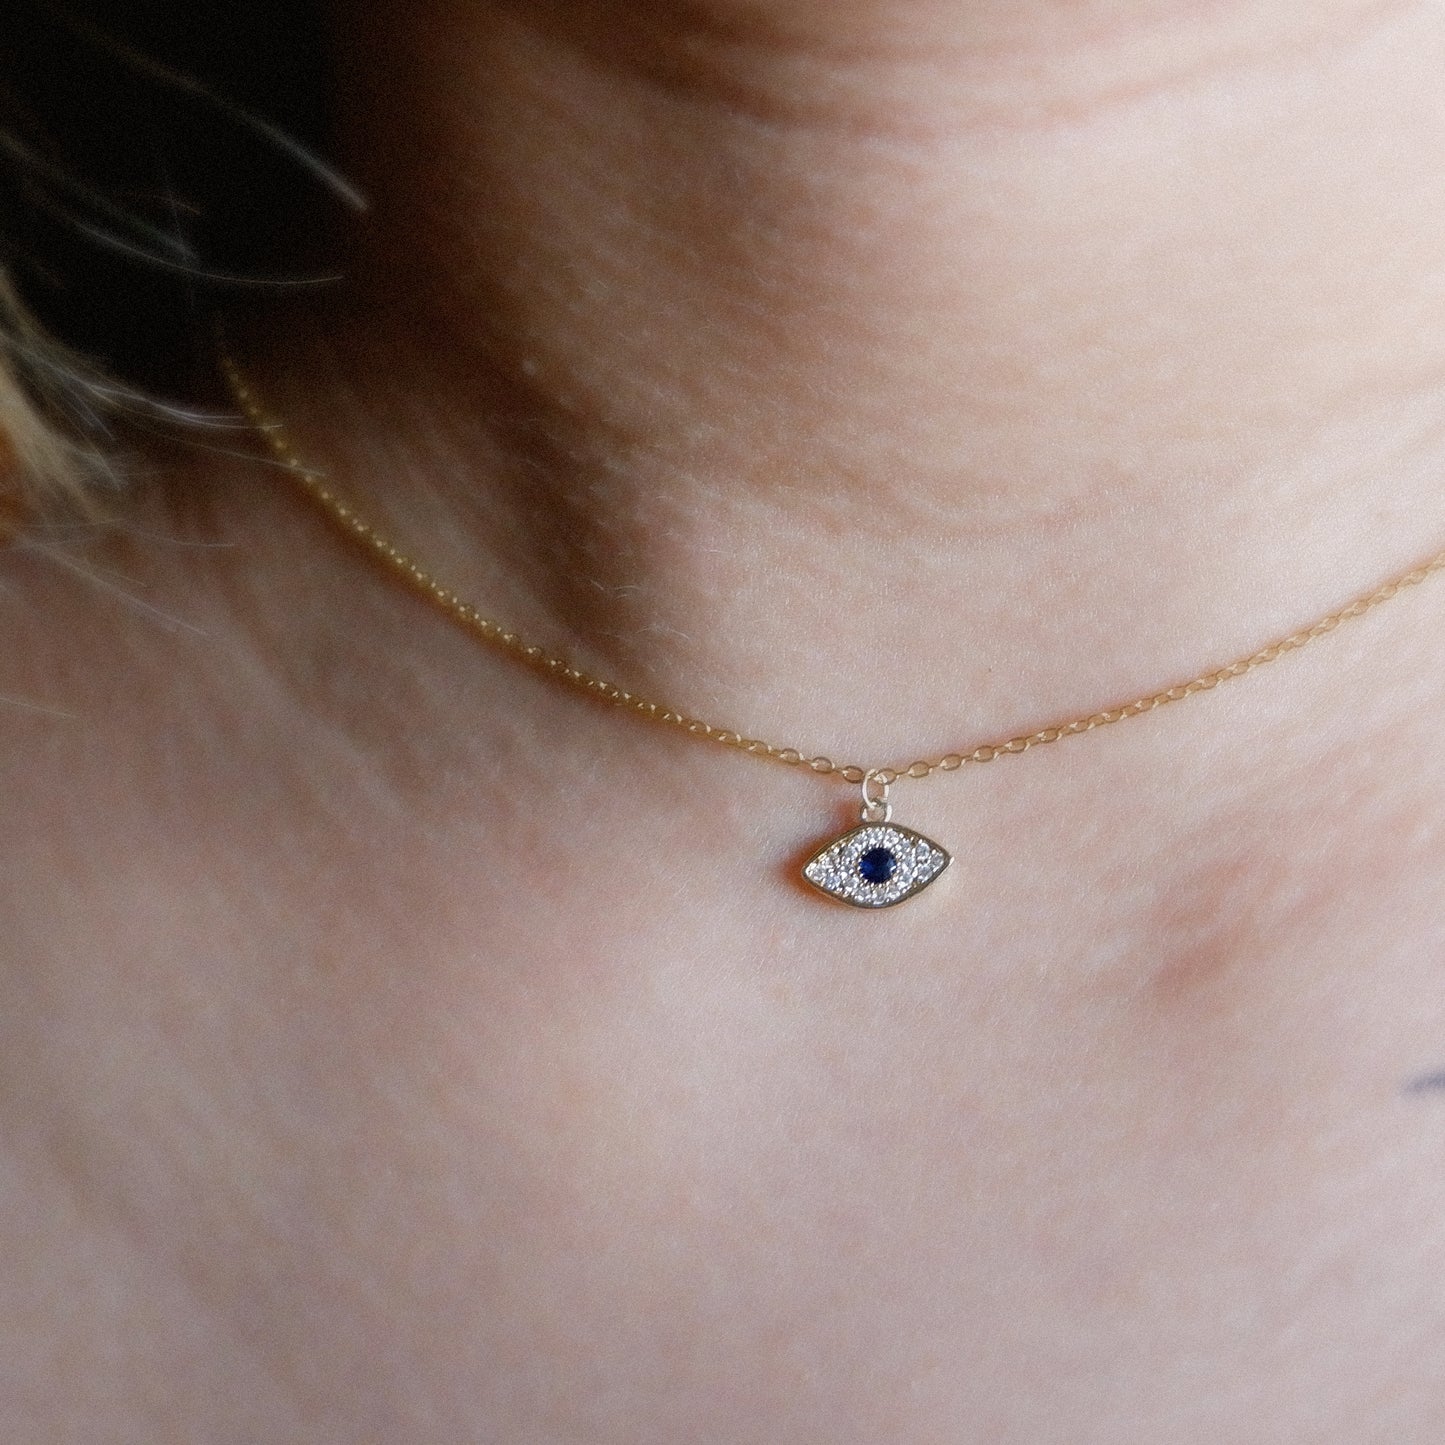 The Tiny Pave Evil Eye Charm Necklace